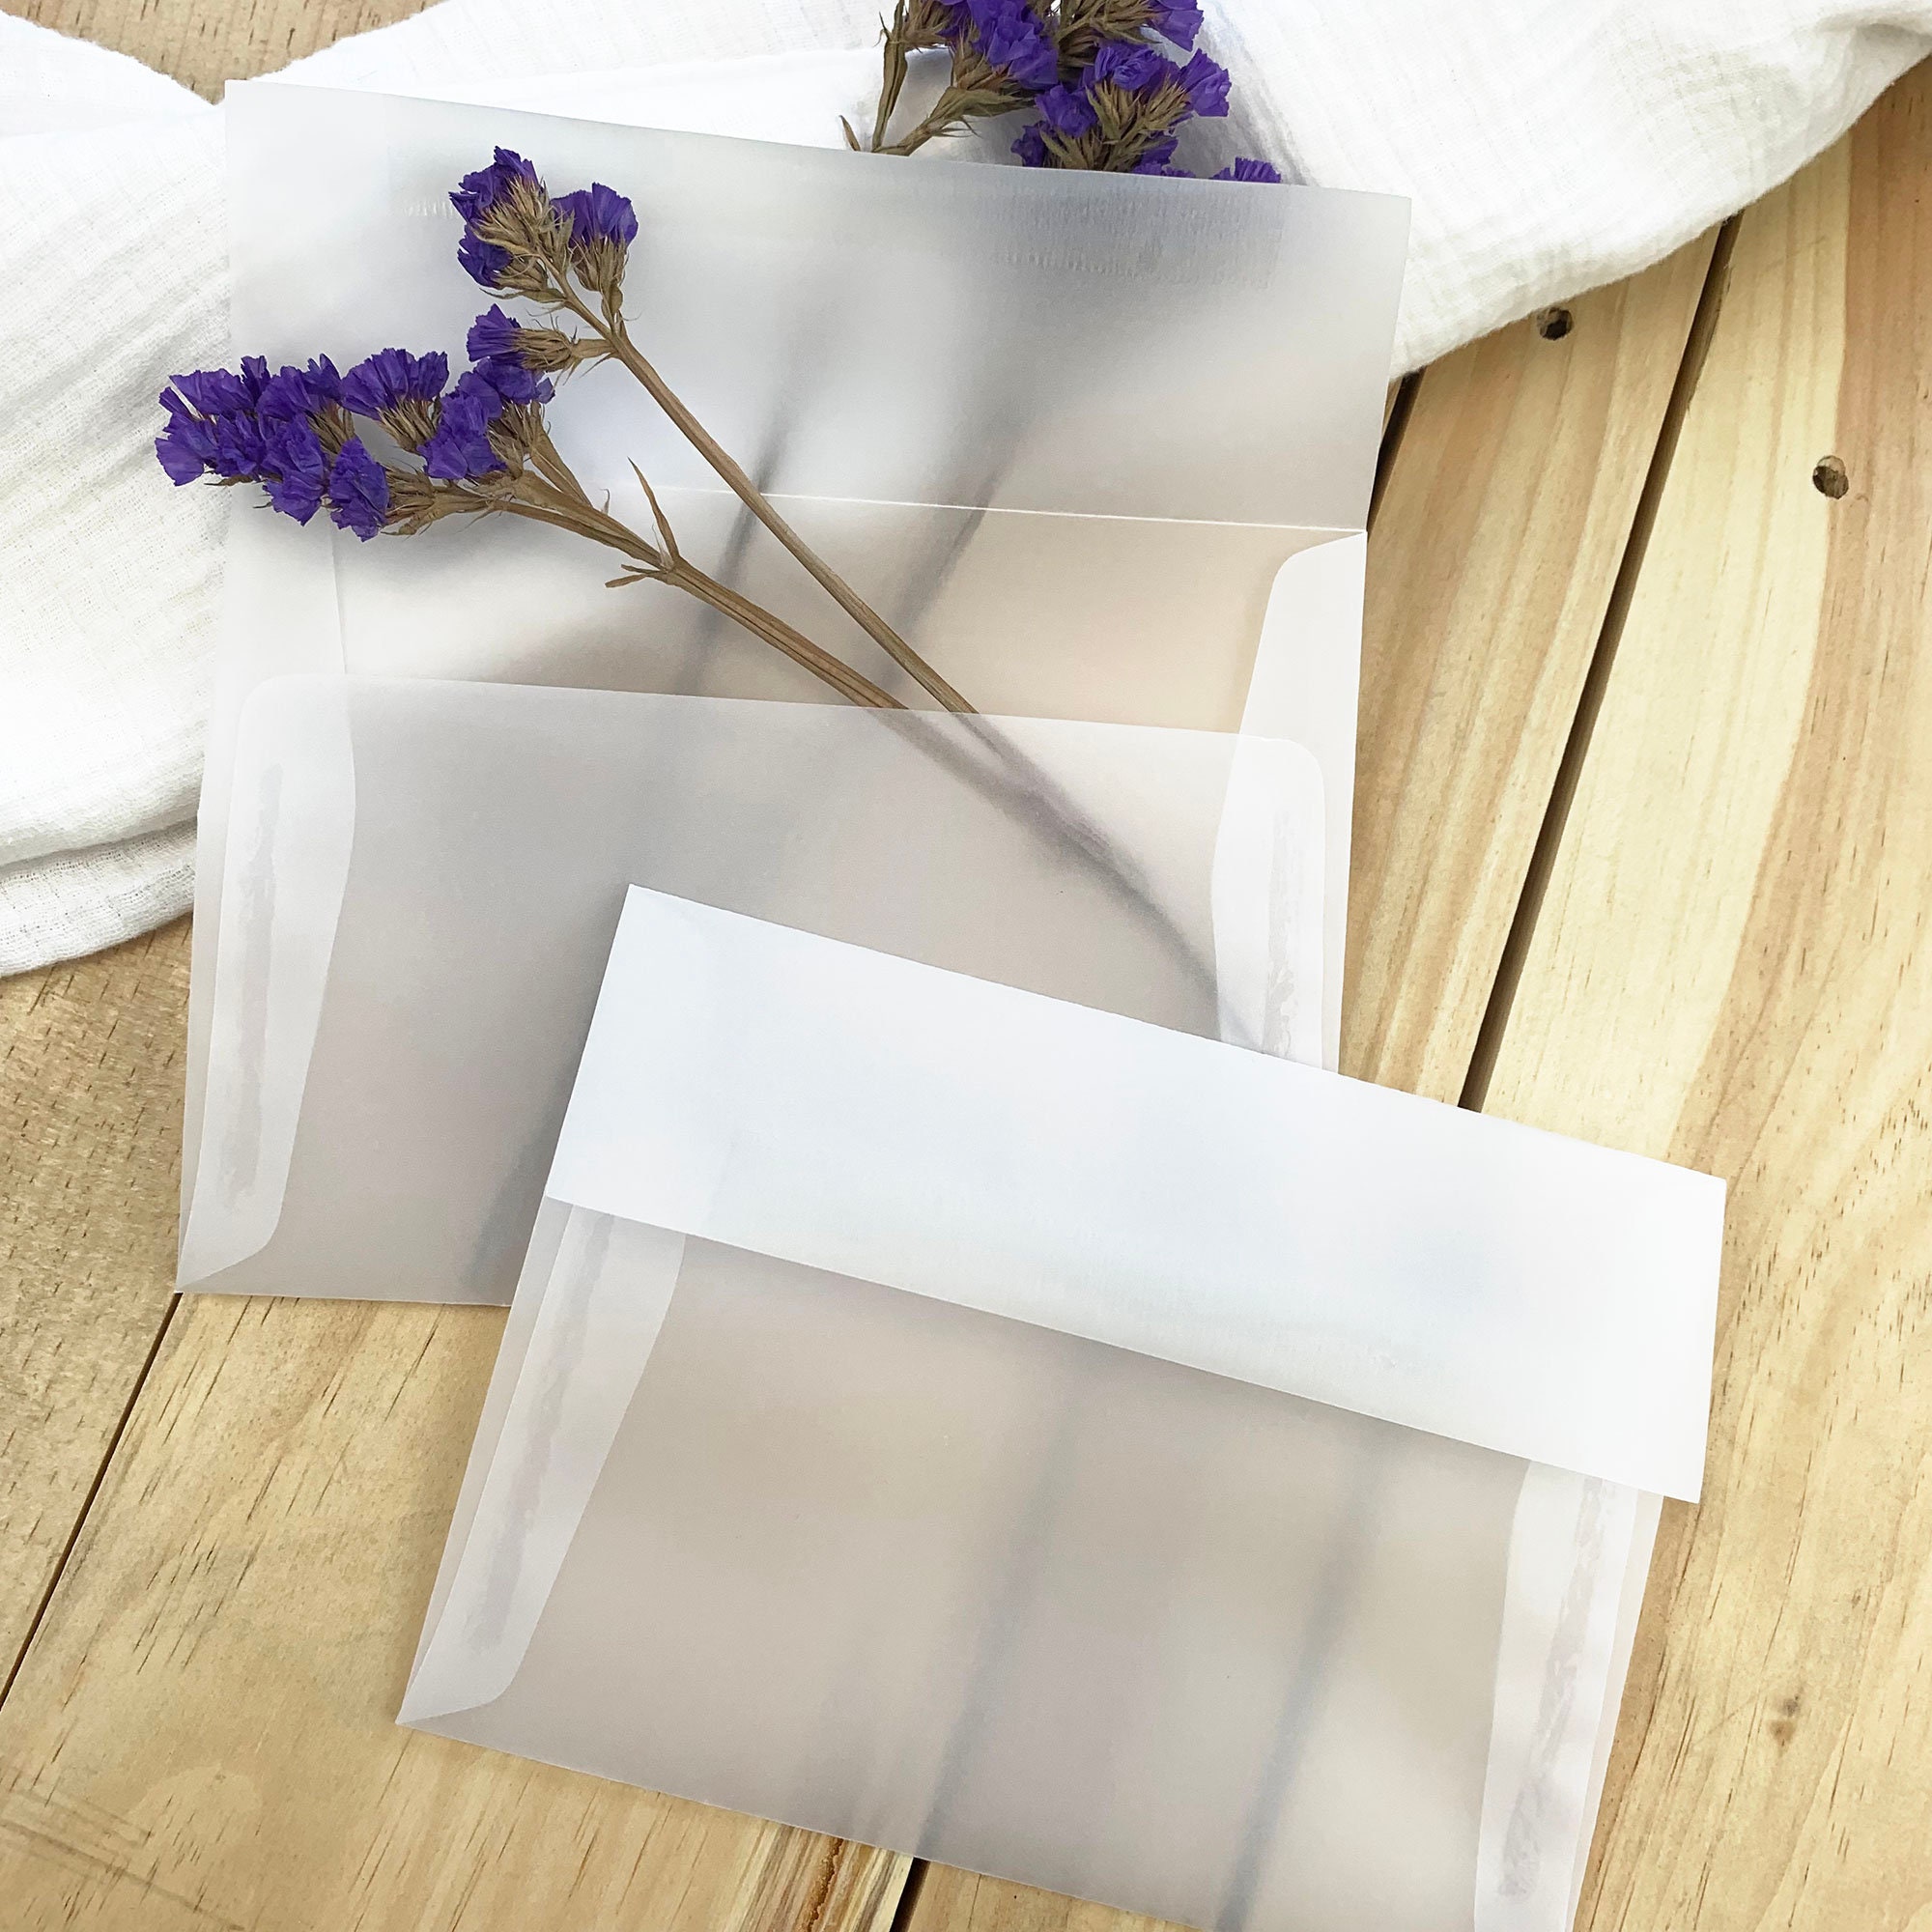 Translucent Vellum Scrapbooking Envelopes